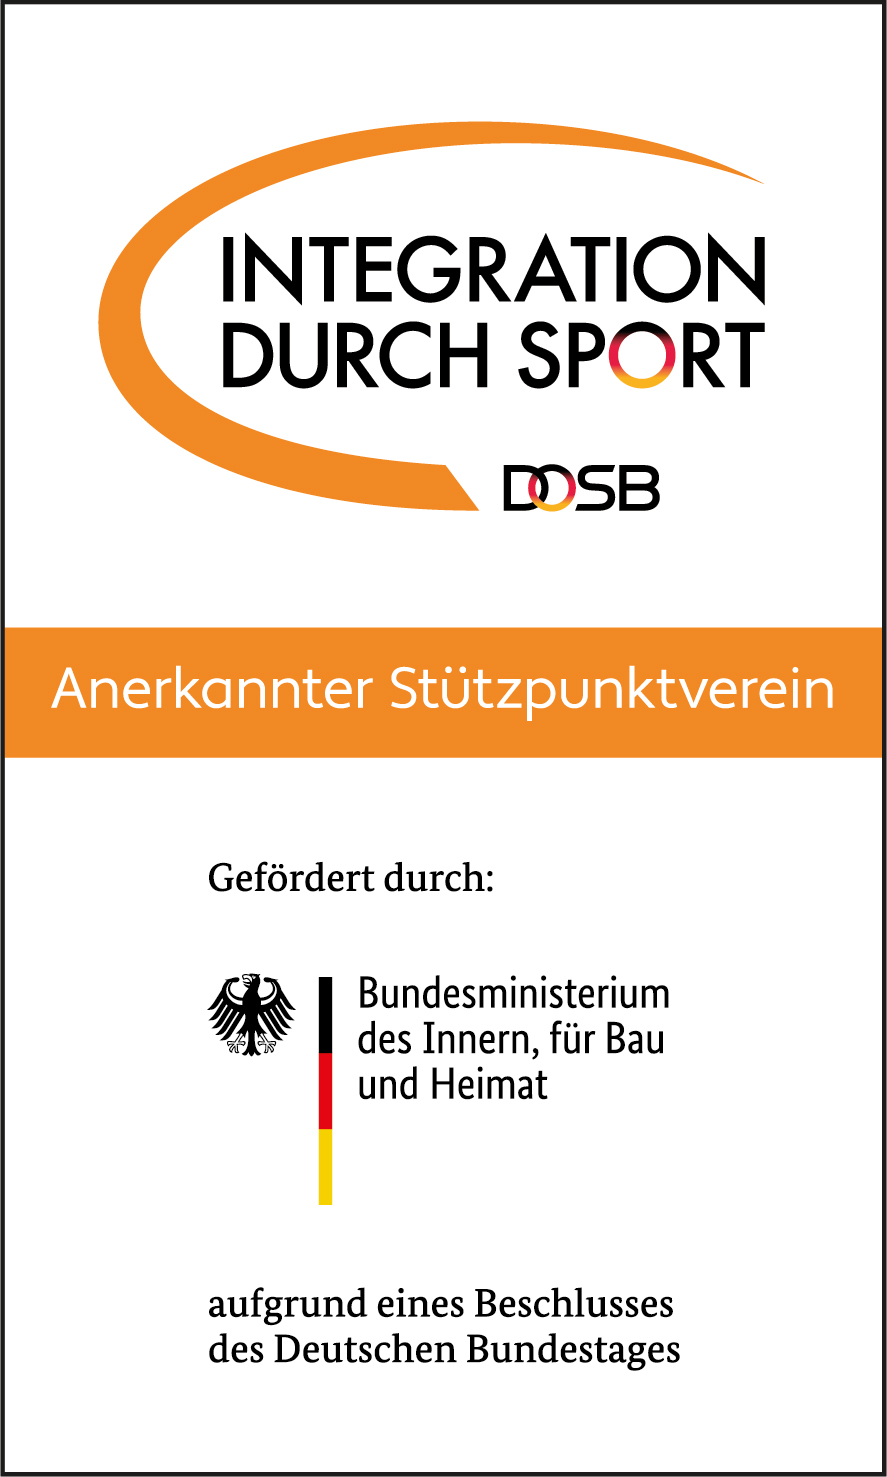 DOSB IdS Logo Button Stuetzpunktverein ab2018 Farbe rgb 300dpi1